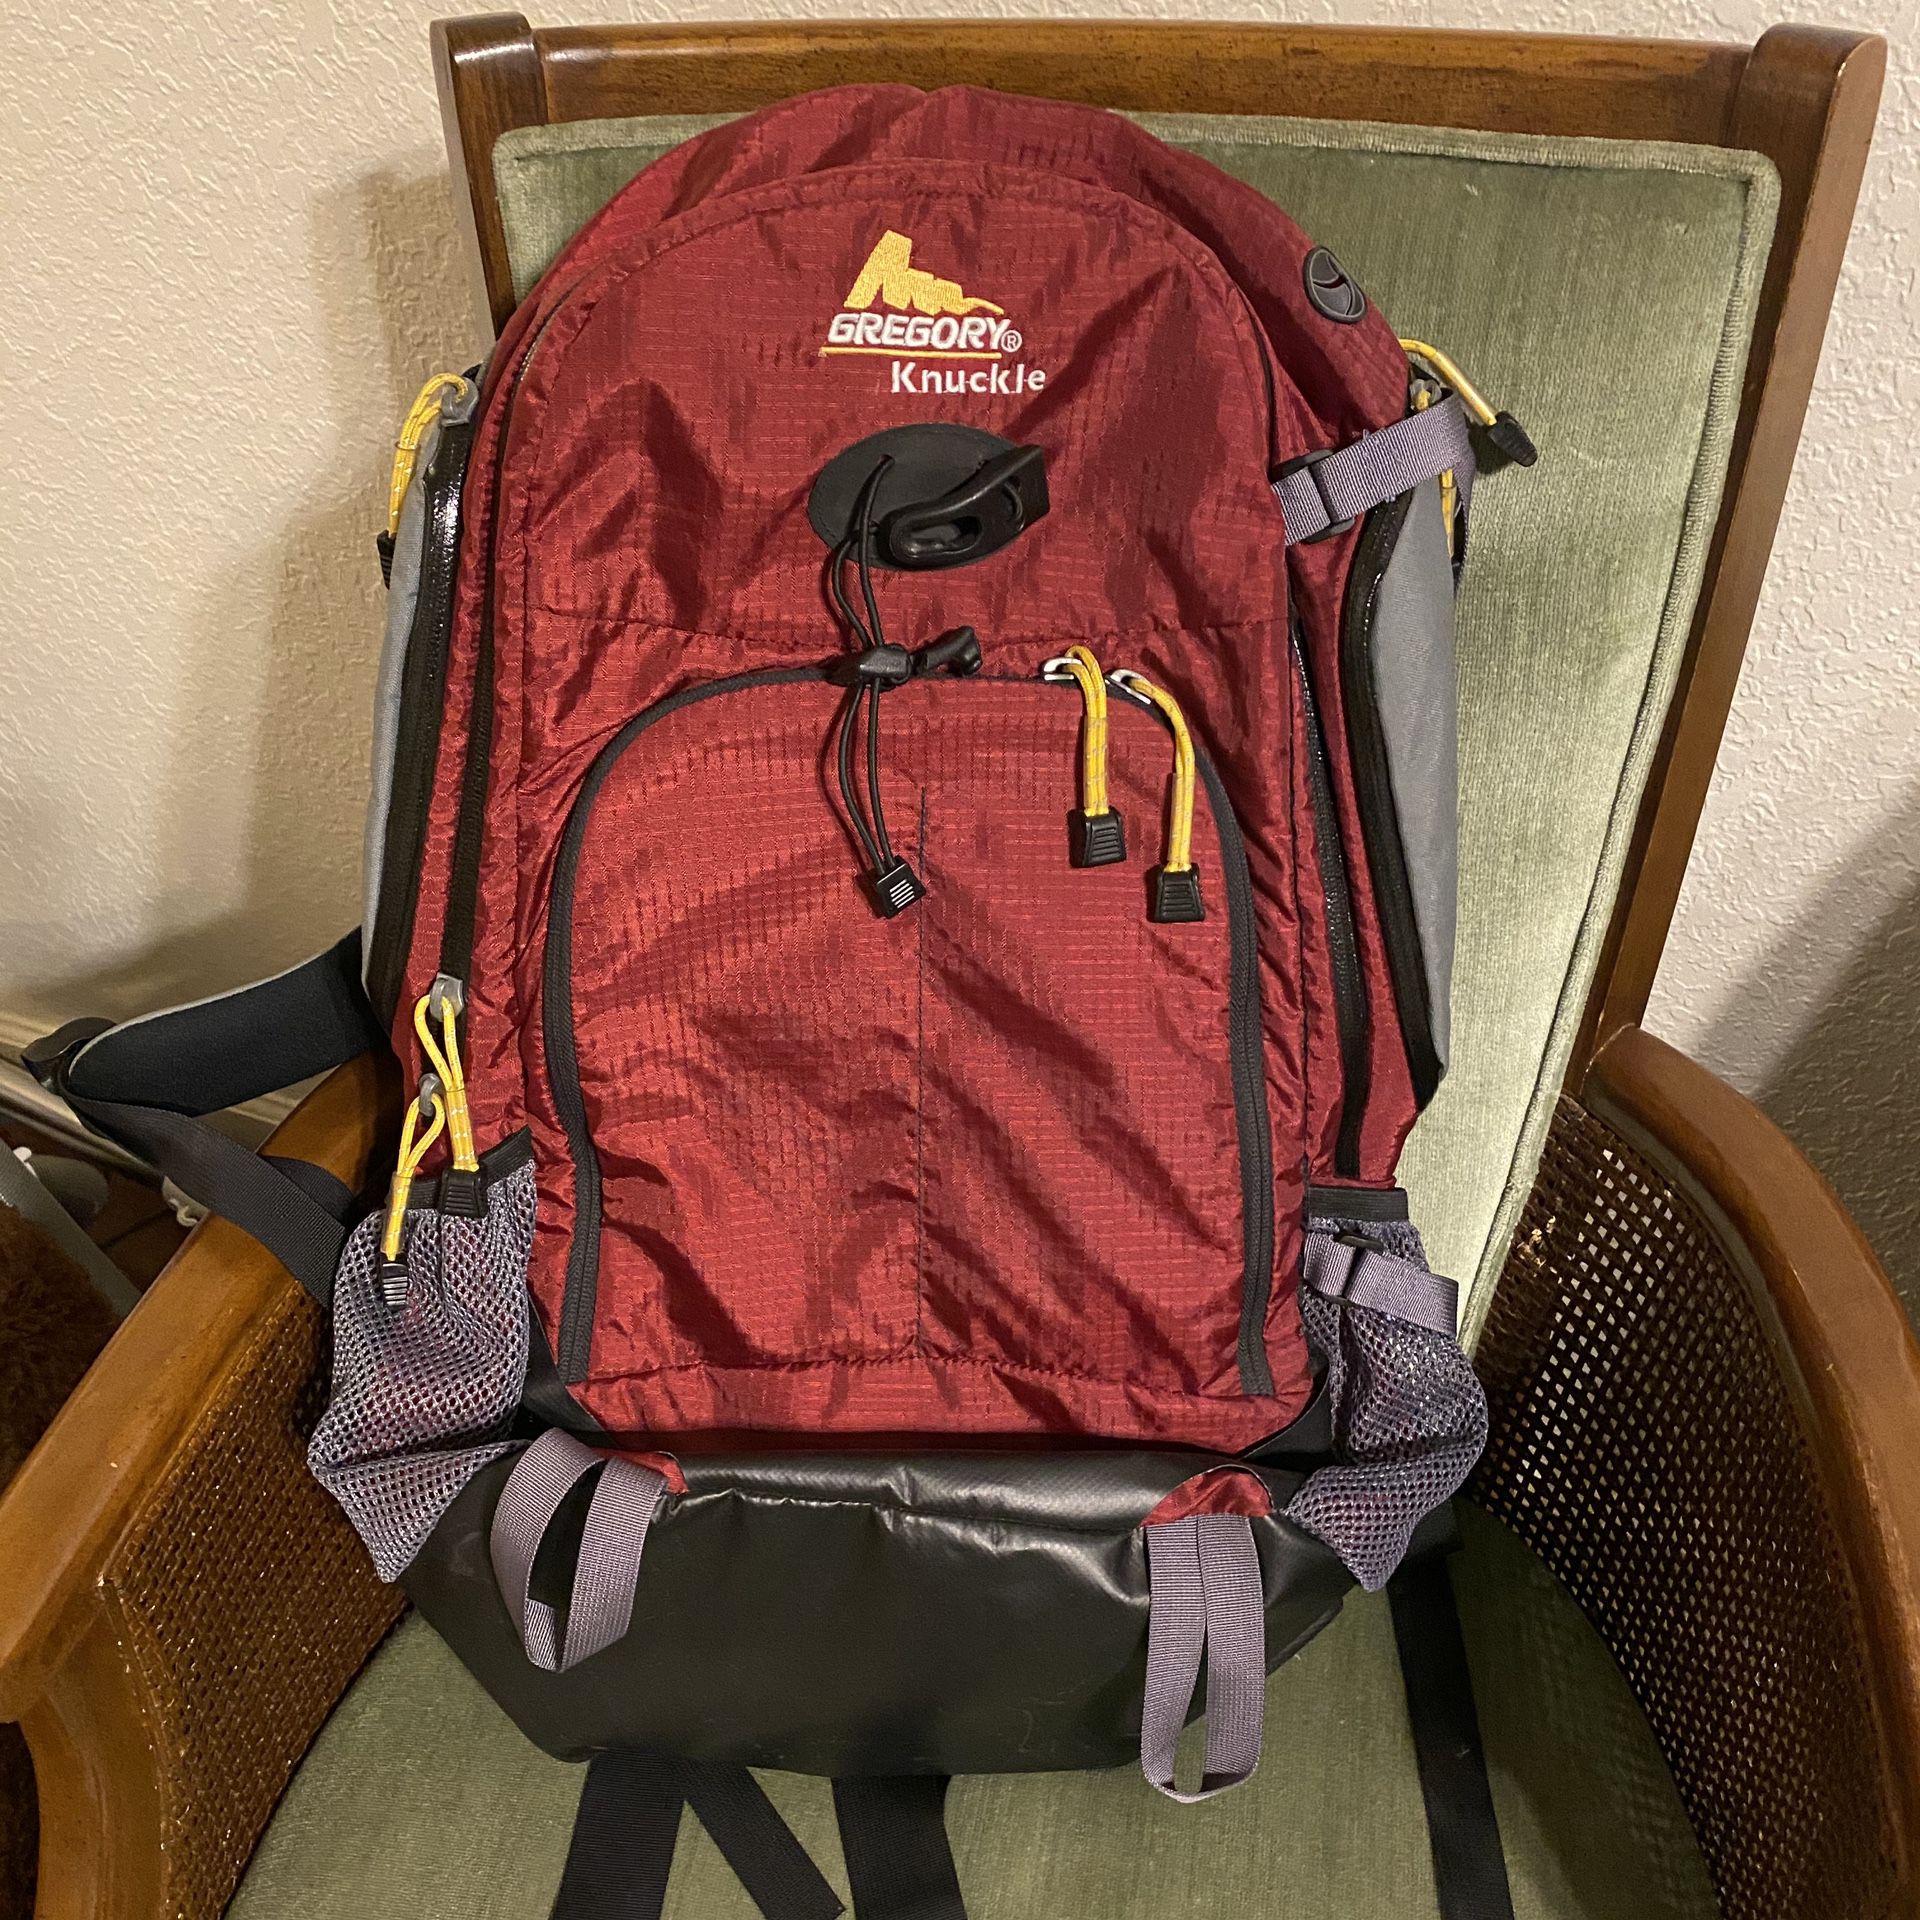 Gregory Knuckle hiking backpack